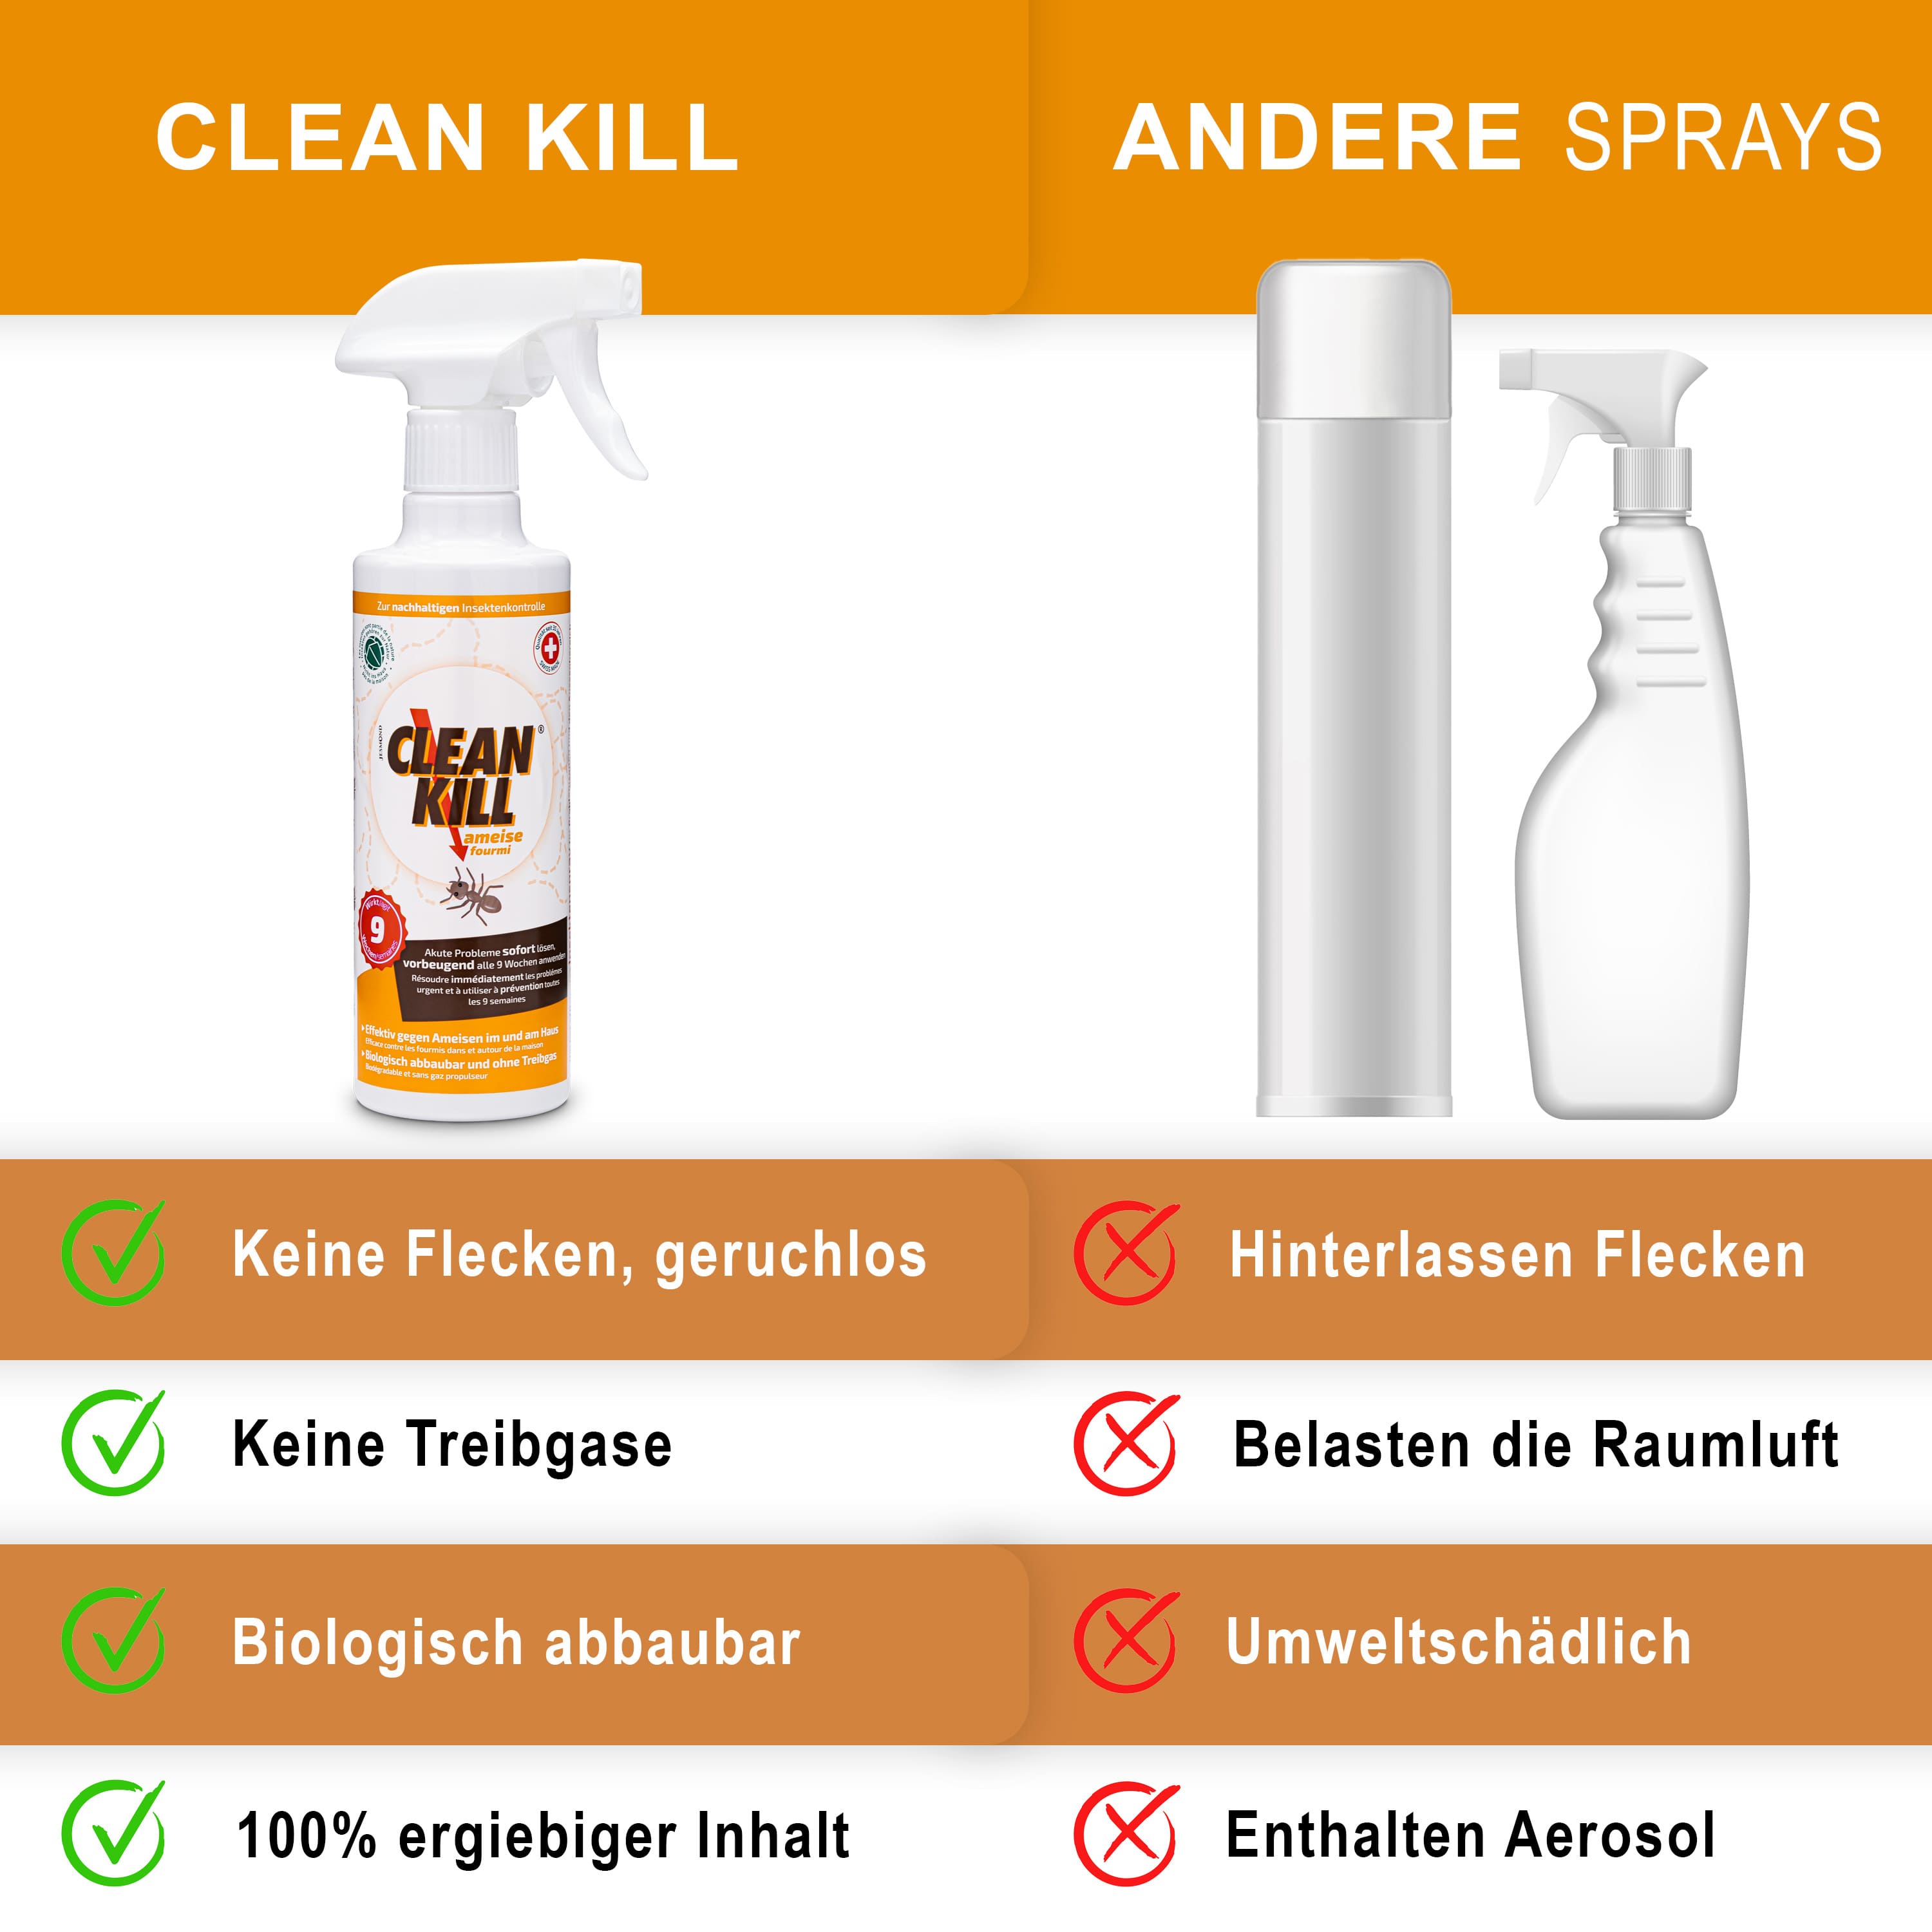 Clean Kill Ameisenspray für innen und außen